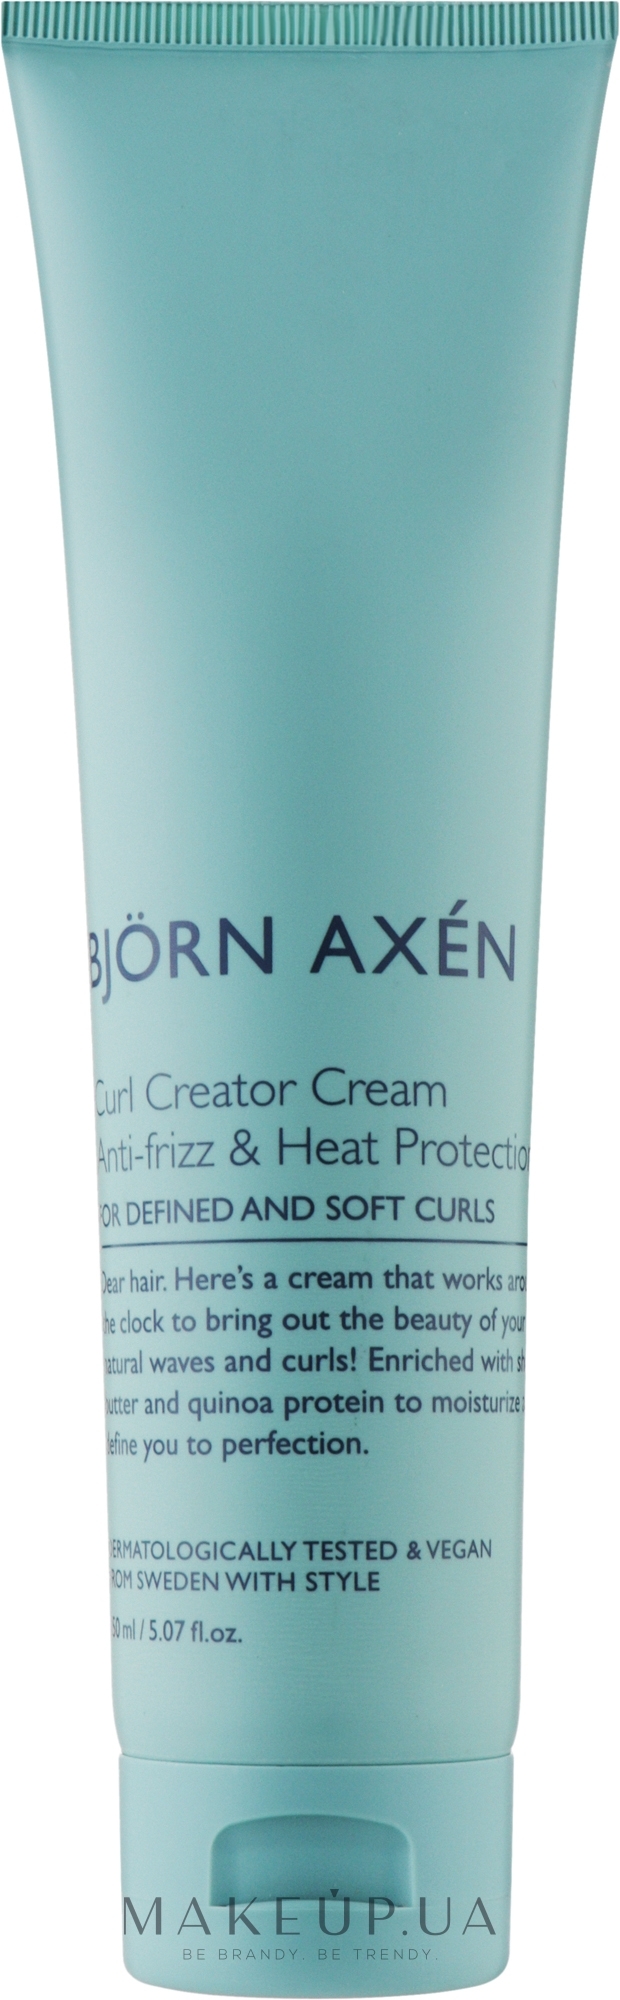 Крем для вьющихся волос - BjOrn AxEn Curl Creator Cream — фото 150ml